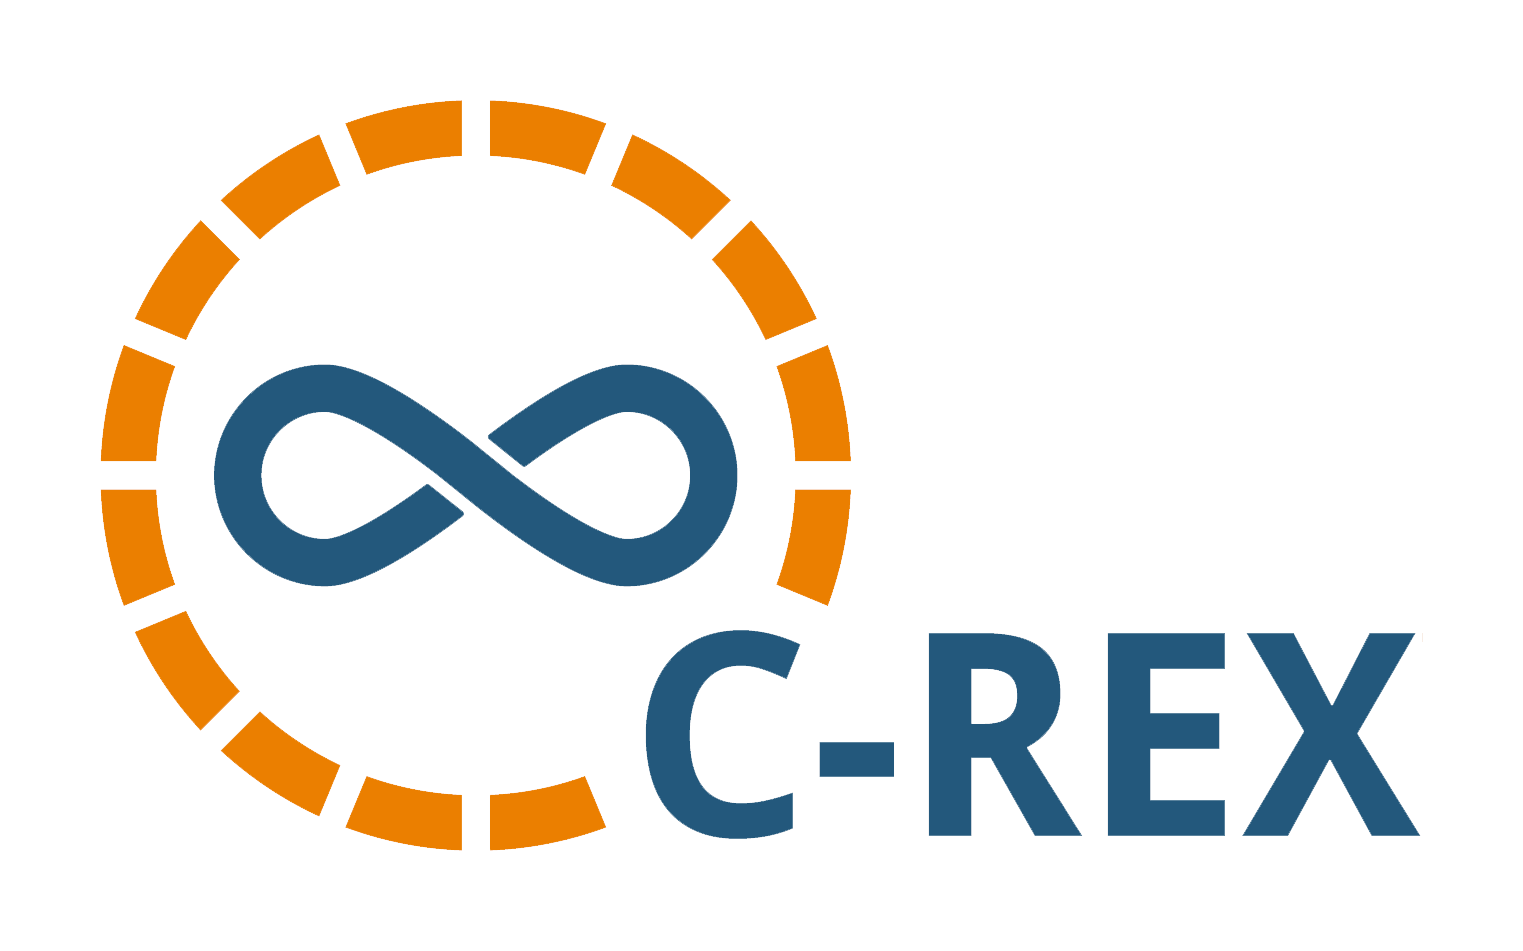 The logo of the gds solution partner c-rex.net GmbH